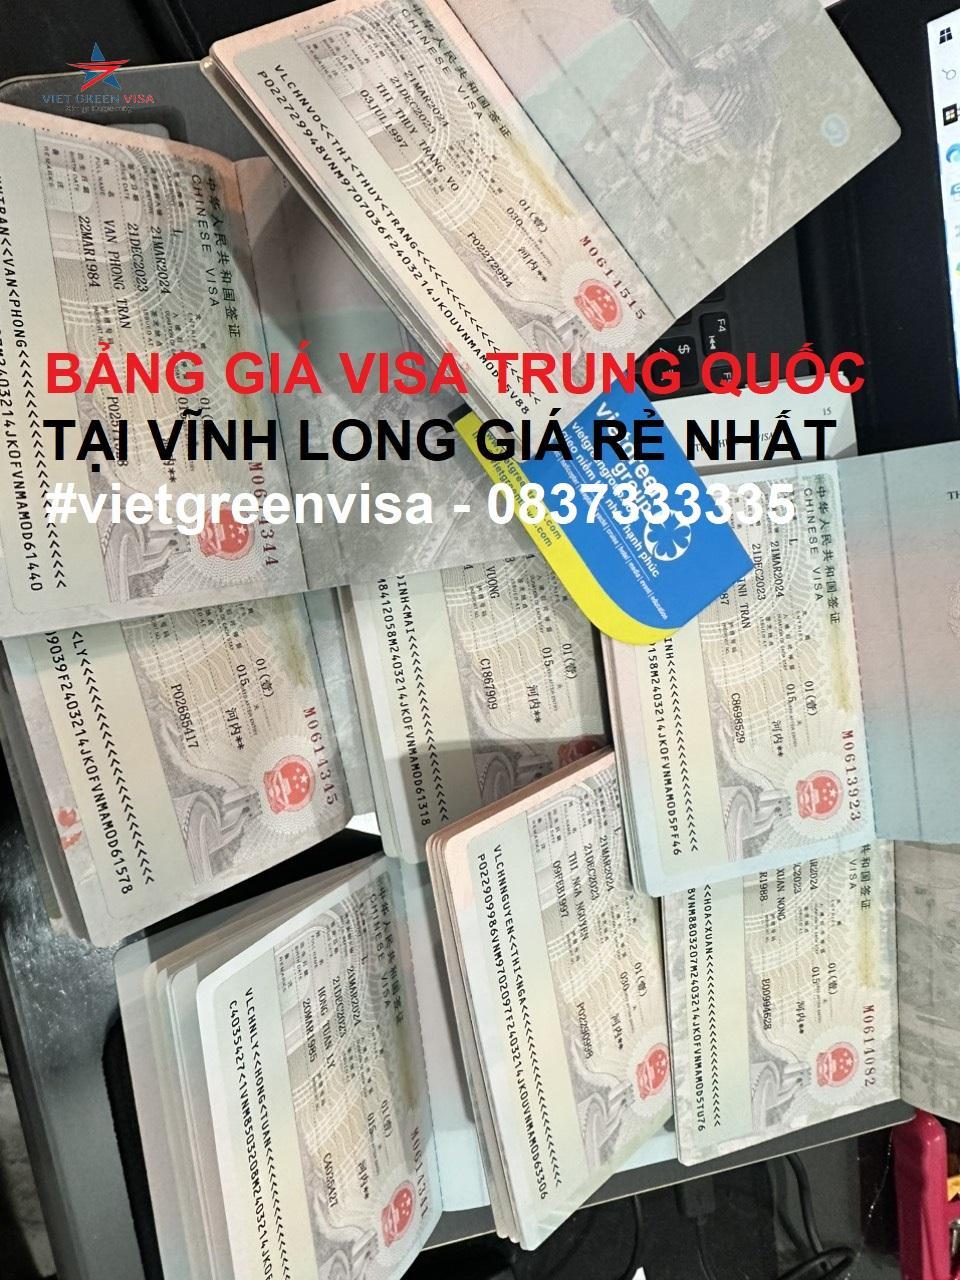 Dịch vụ xin visa Trung Quốc tại Vĩnh Long uy tín giá rẻ